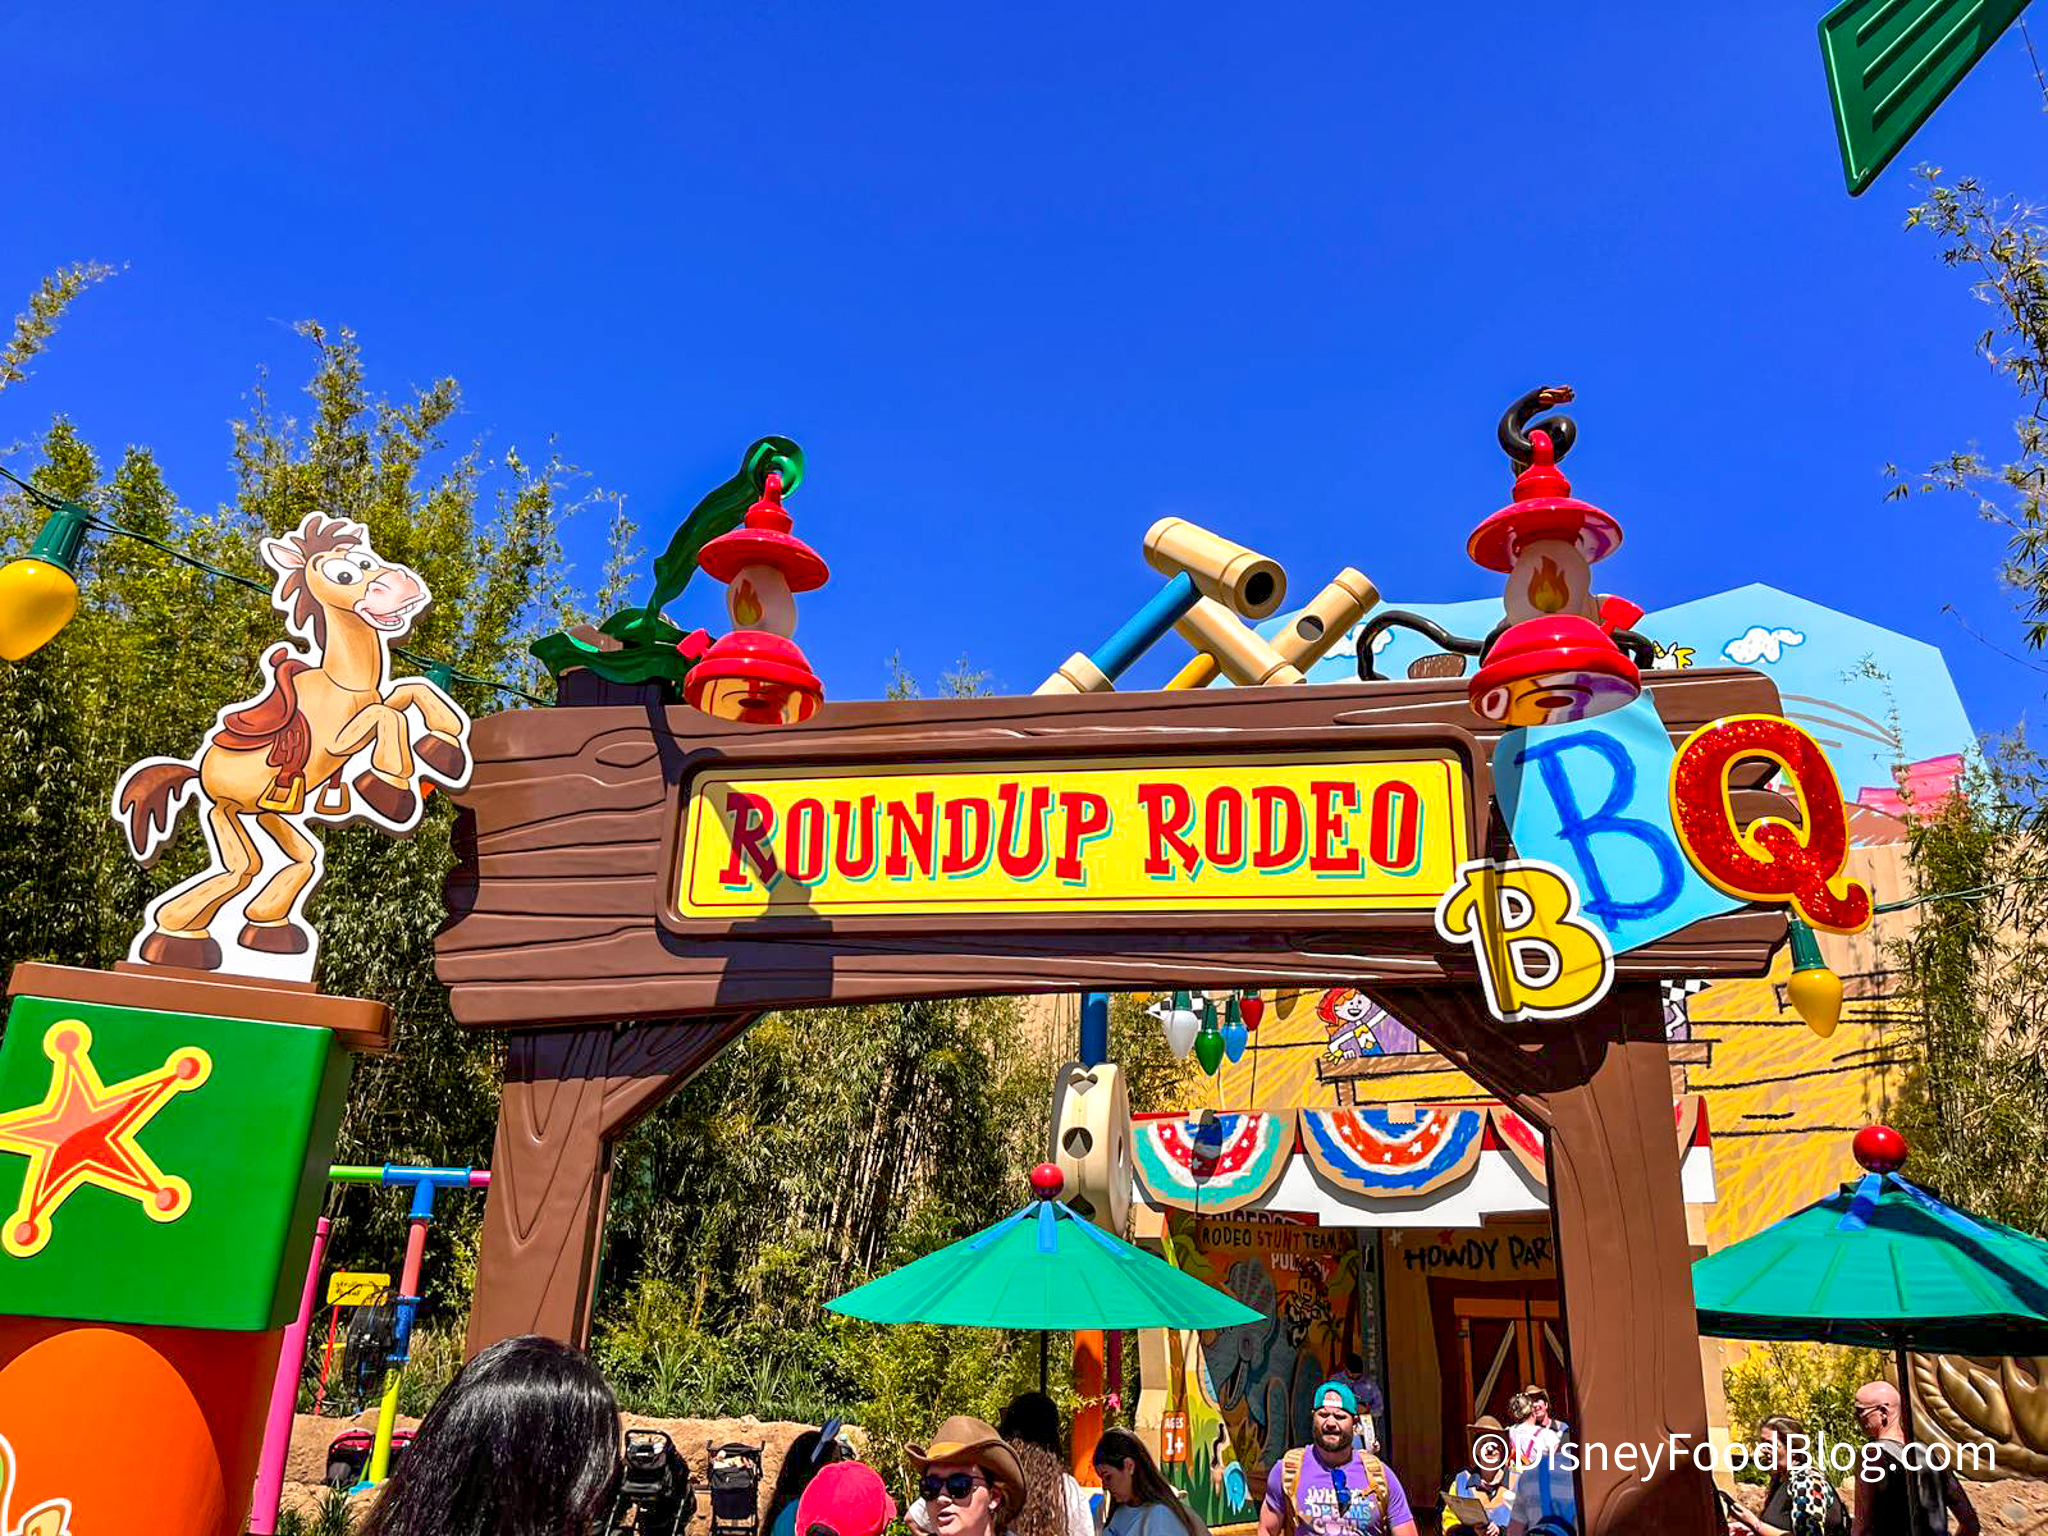 Rodeo-Roundup-BBQ-.jpg